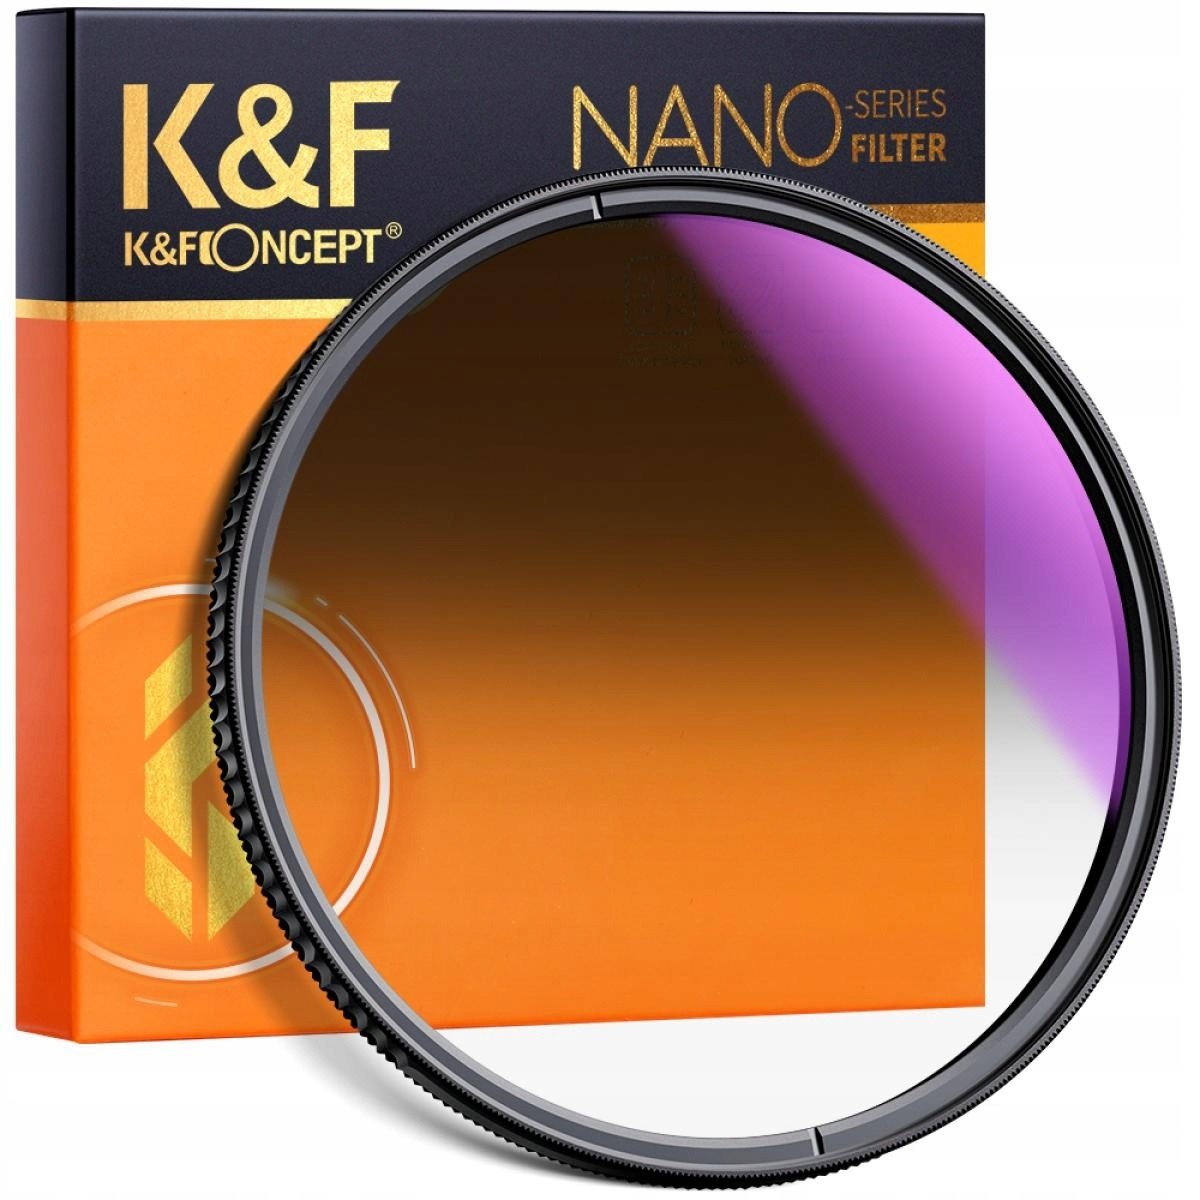 K&f Filtr šedý NanoX GND8 Soft 52mm